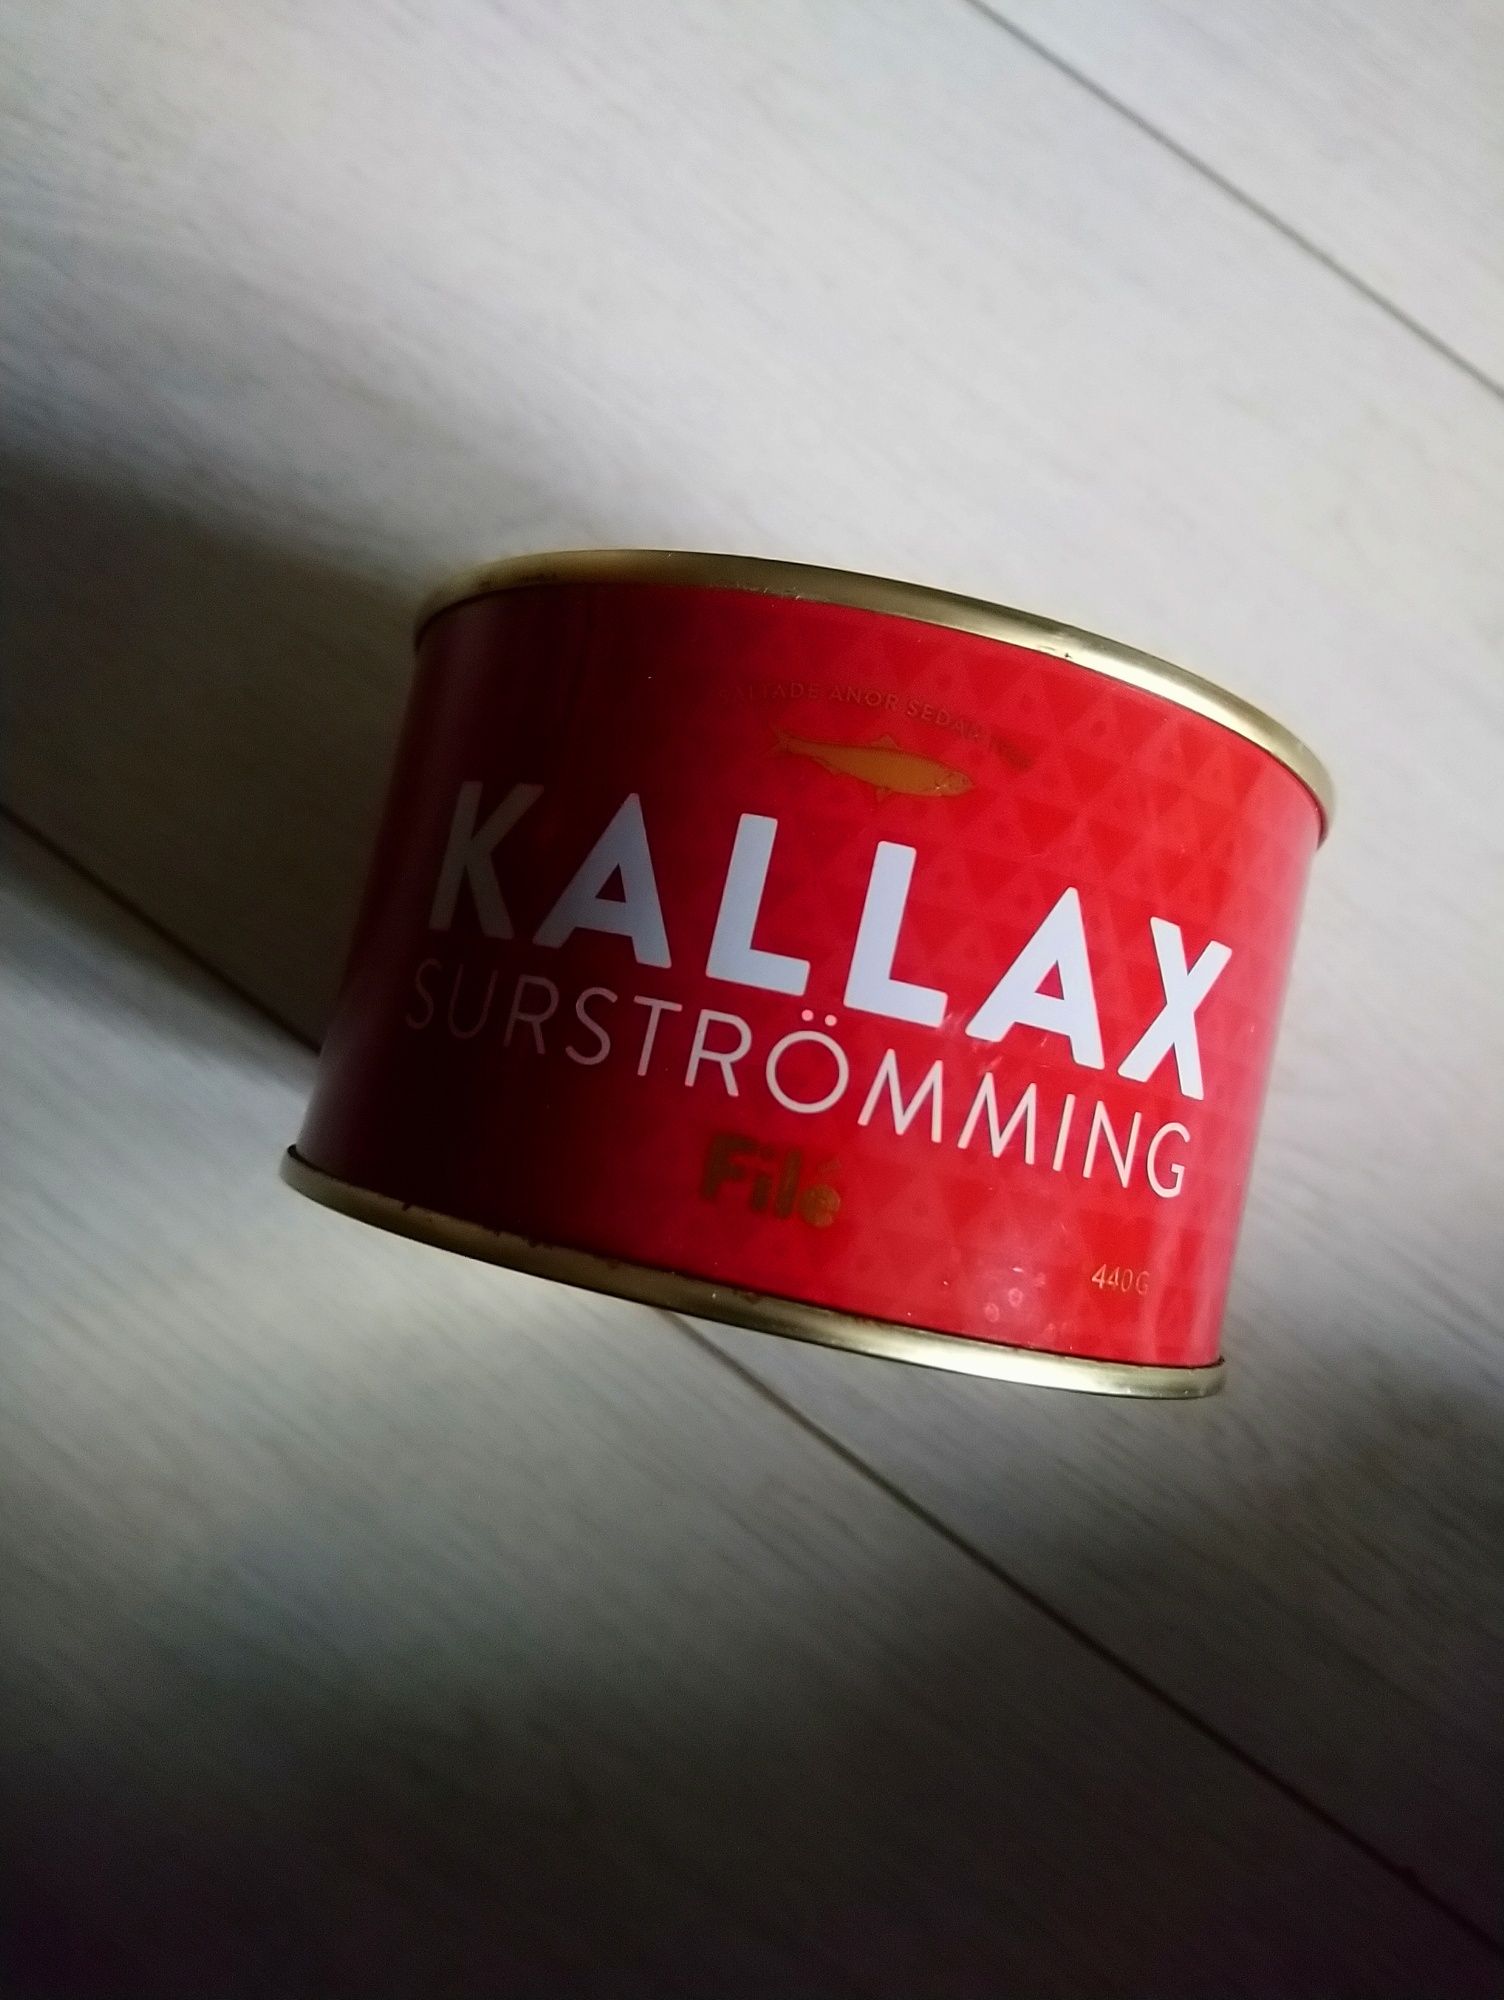 Сюрстреммінг рибна консерва 440 гр Surstromming Kallax філе, Швеції